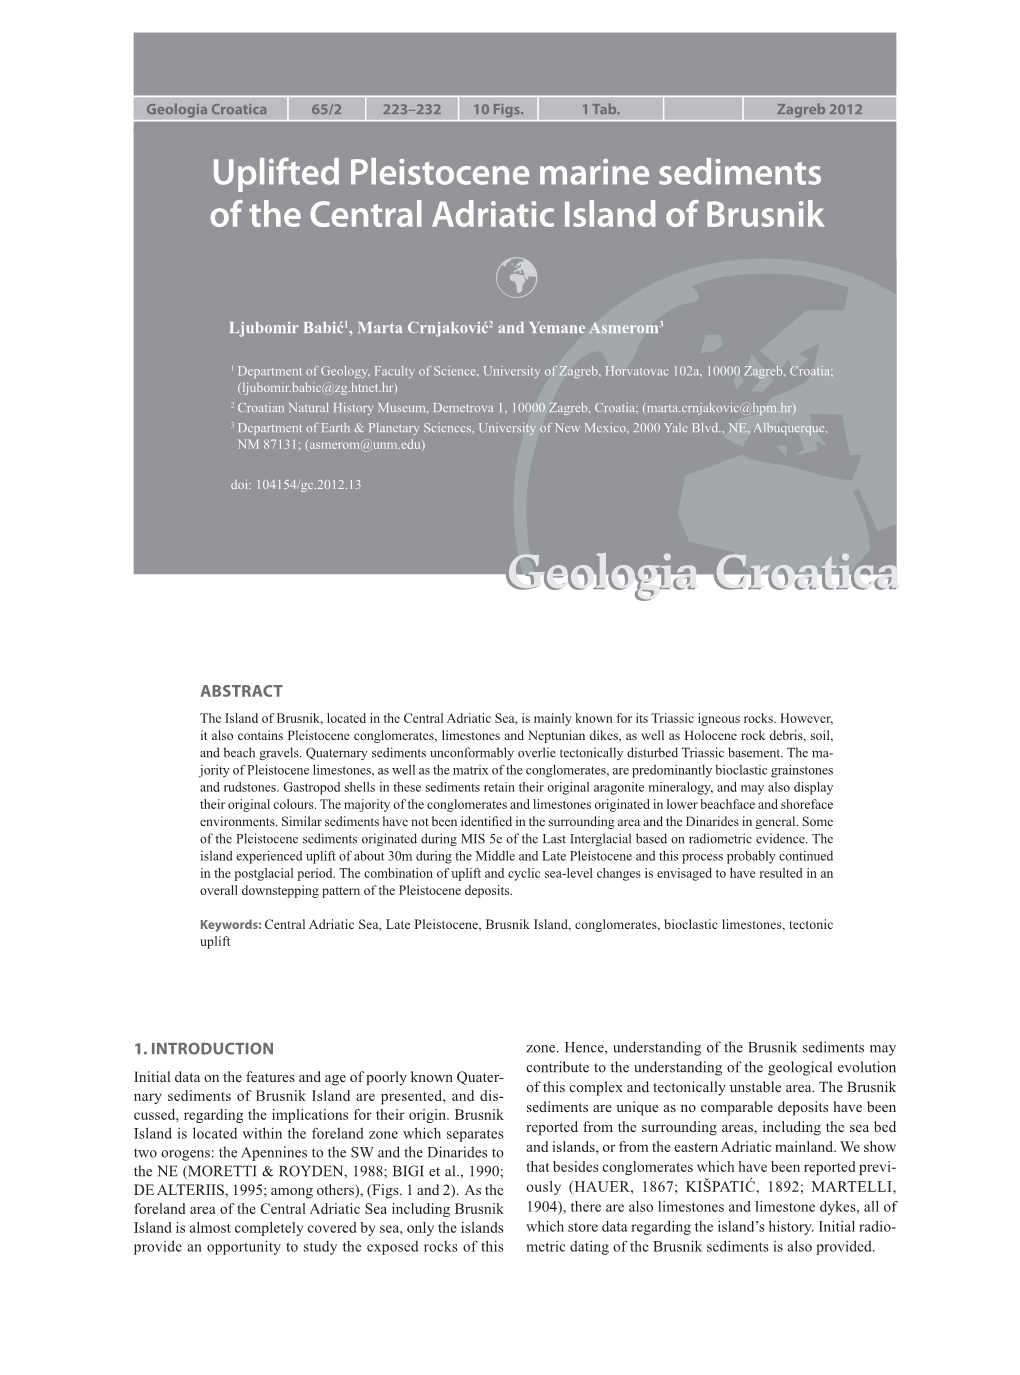 Uplifted Pleistocene Marine Sediments of the Central Adriatic Island of Brusnik Uplifted Pleistocene Marine Sediments of the Central Adriatic Island of Brusnik 